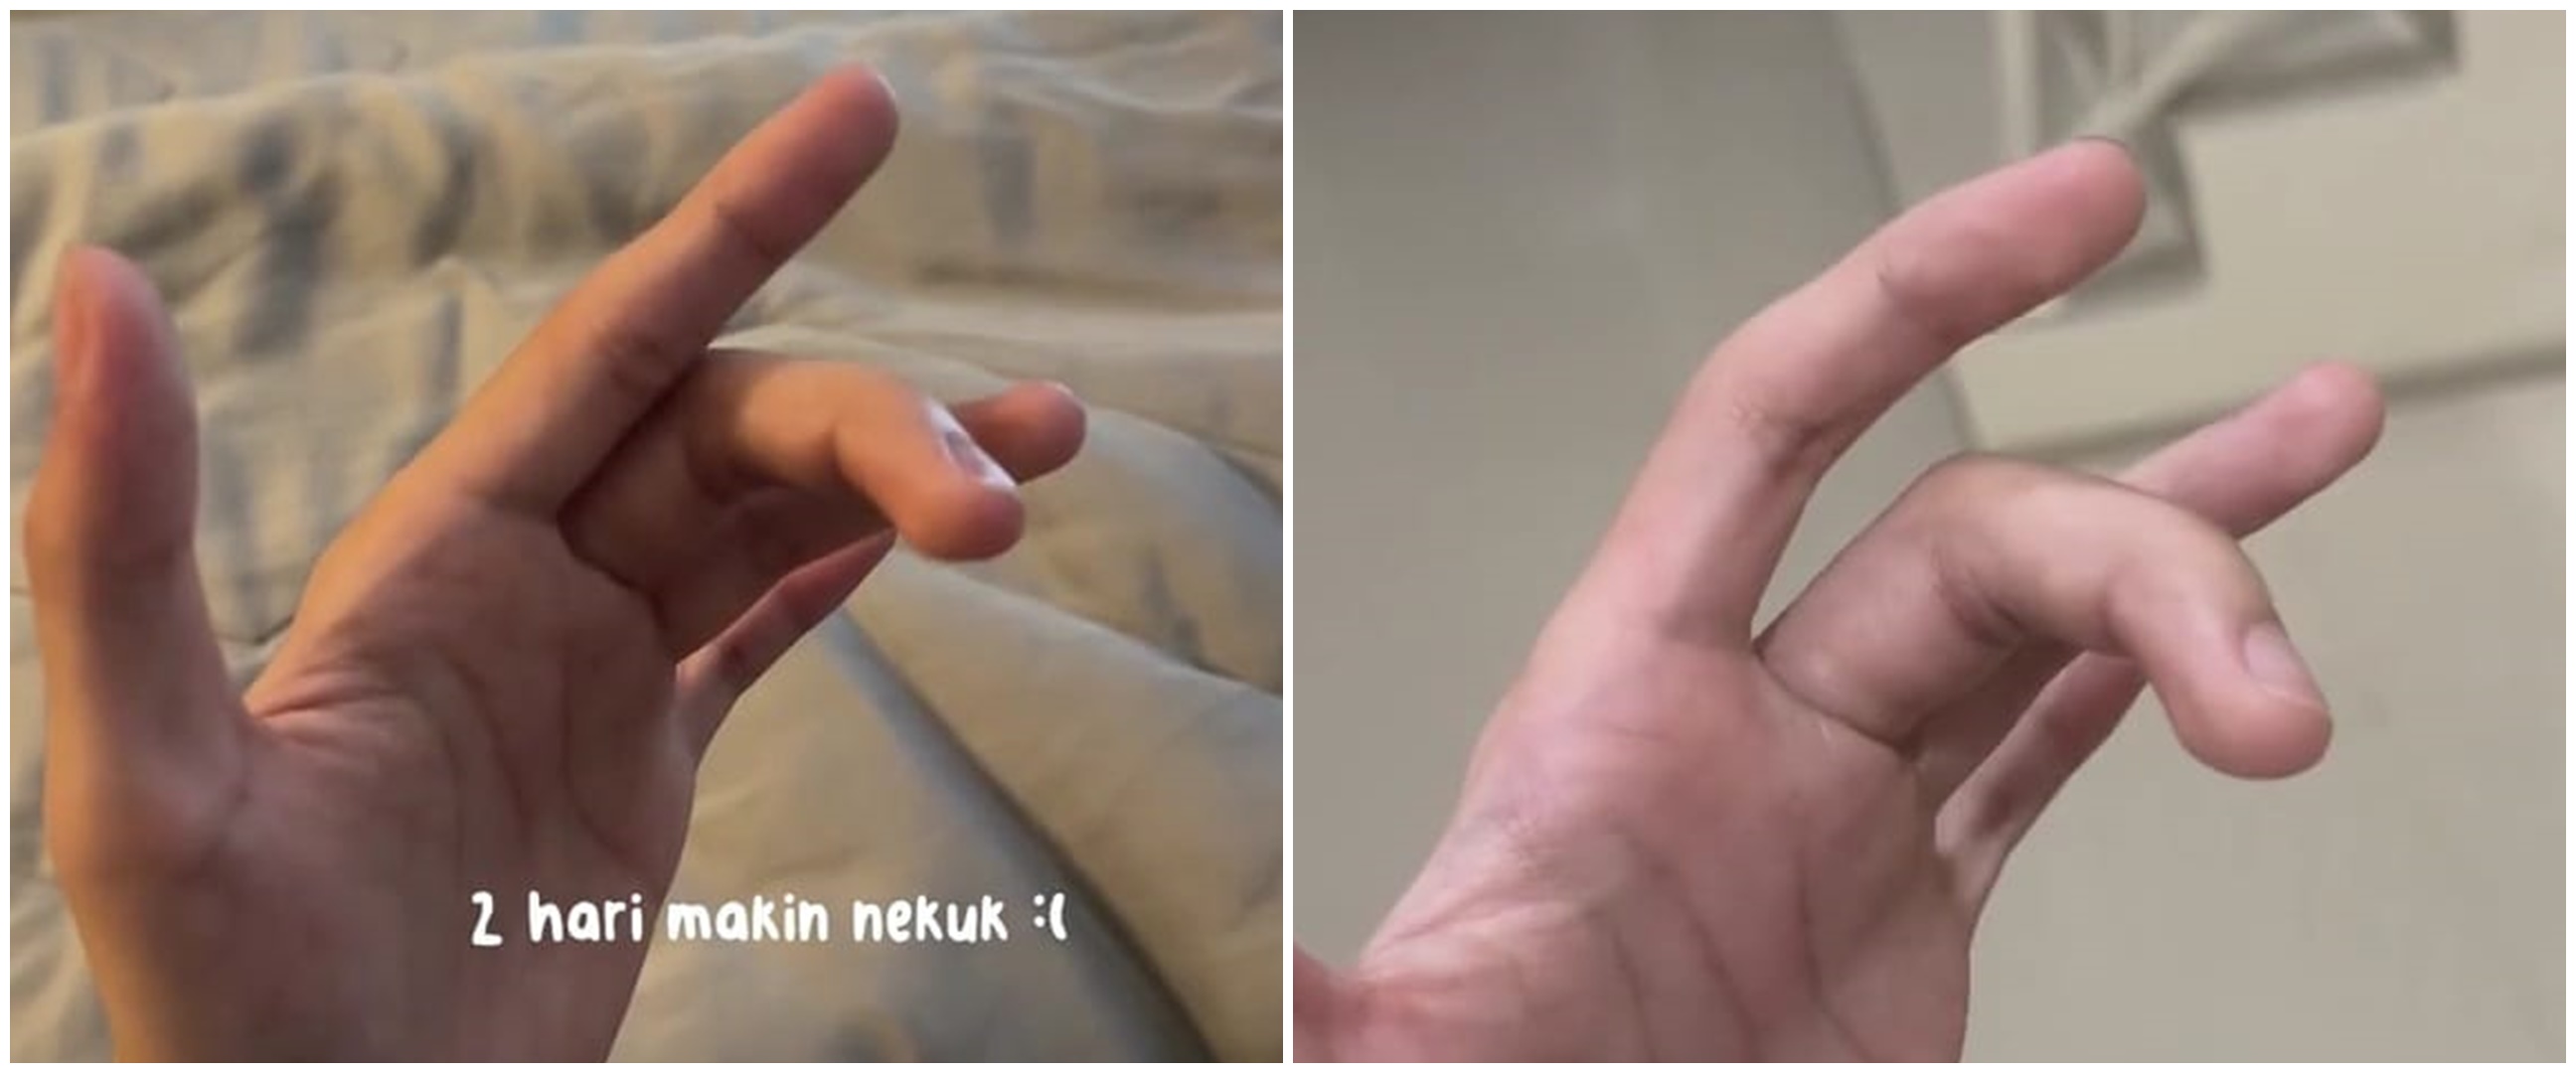 Curhat netizen sendi jari sakit dikira terkilir ternyata autoimun, ceritanya bikin pilu